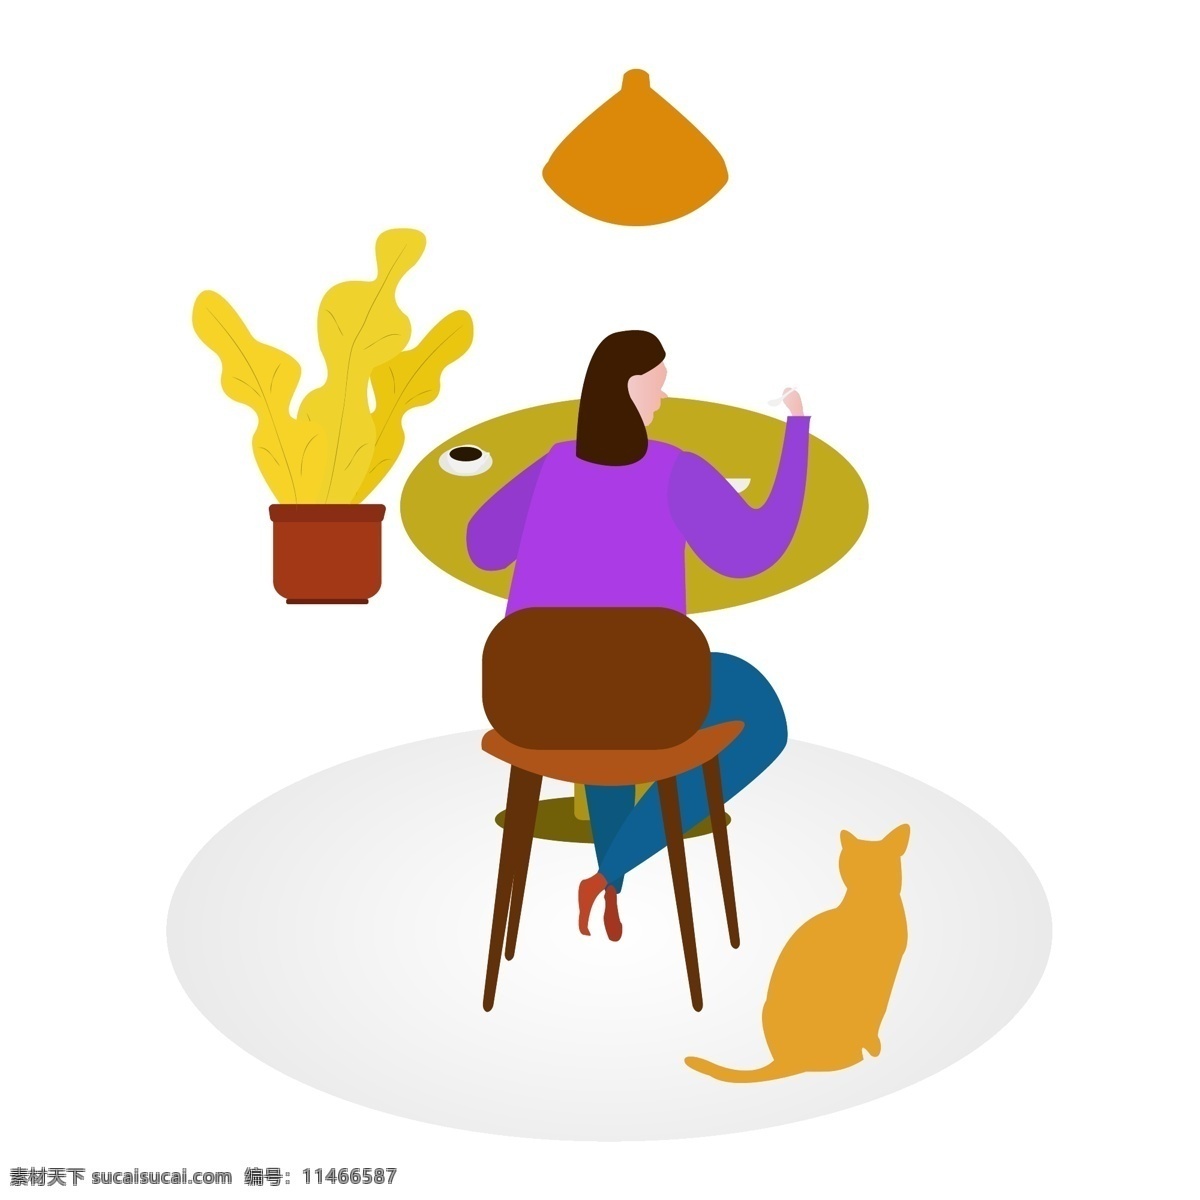 独自 吃饭 女人 矢量 夸张 扁平化 矢量图 咖啡 勺子 碗 卡通画 ppt装饰 植物 猫 桌子 椅子 吊灯 插画 手绘